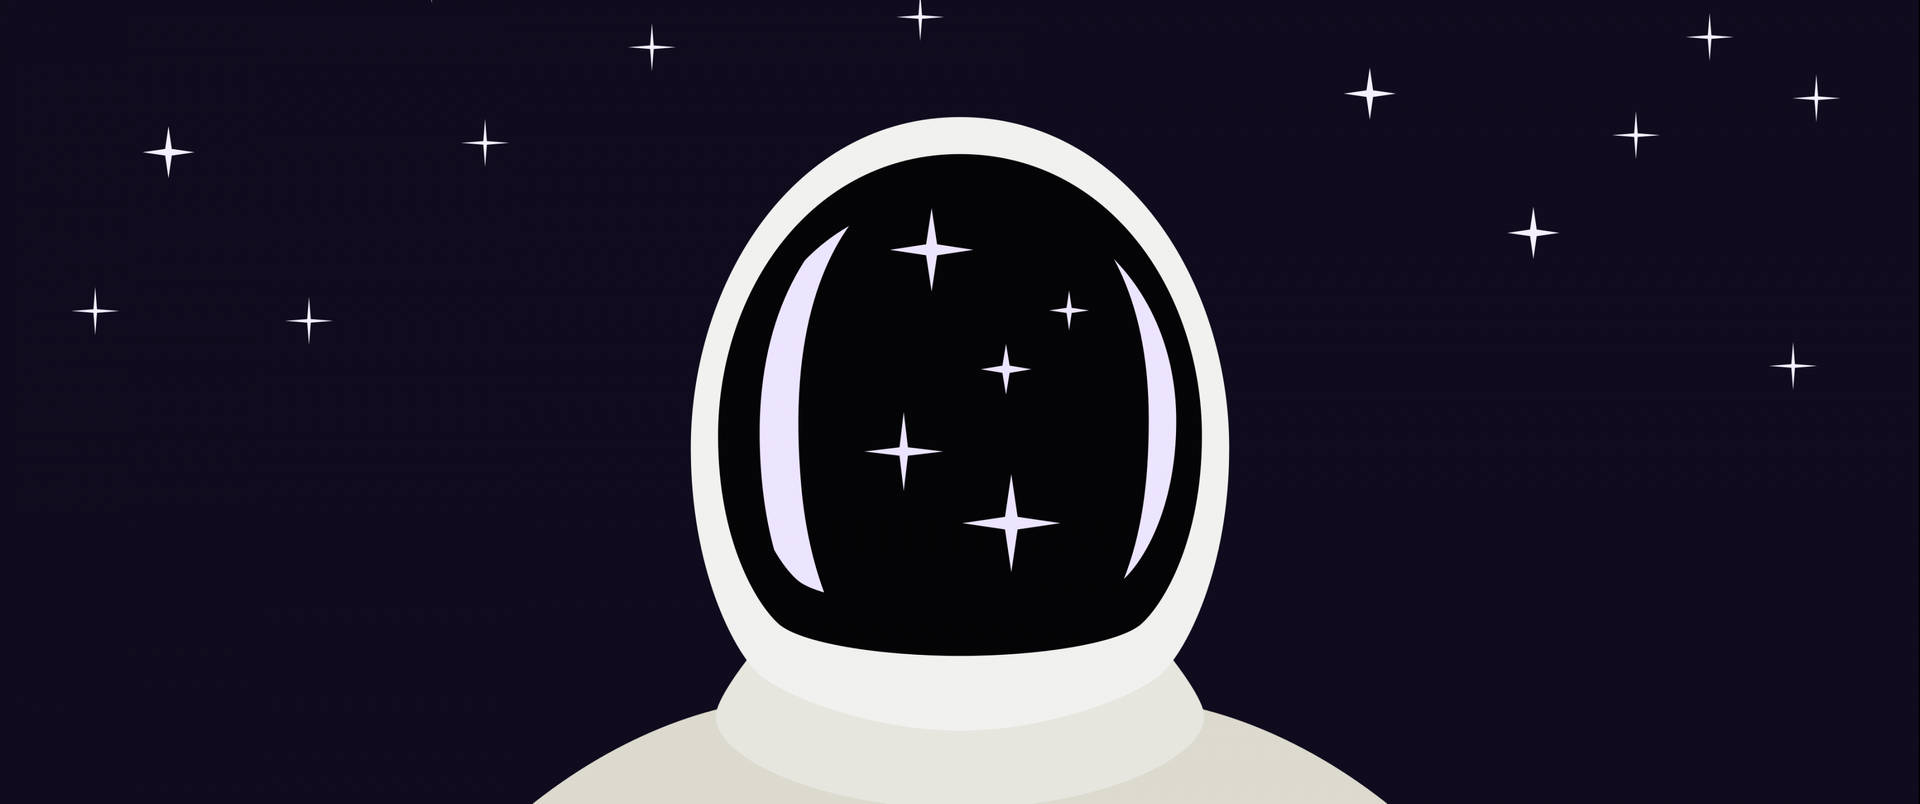 Diseñode Protector Facial De Astronauta En Blanco Y Negro Fondo de pantalla